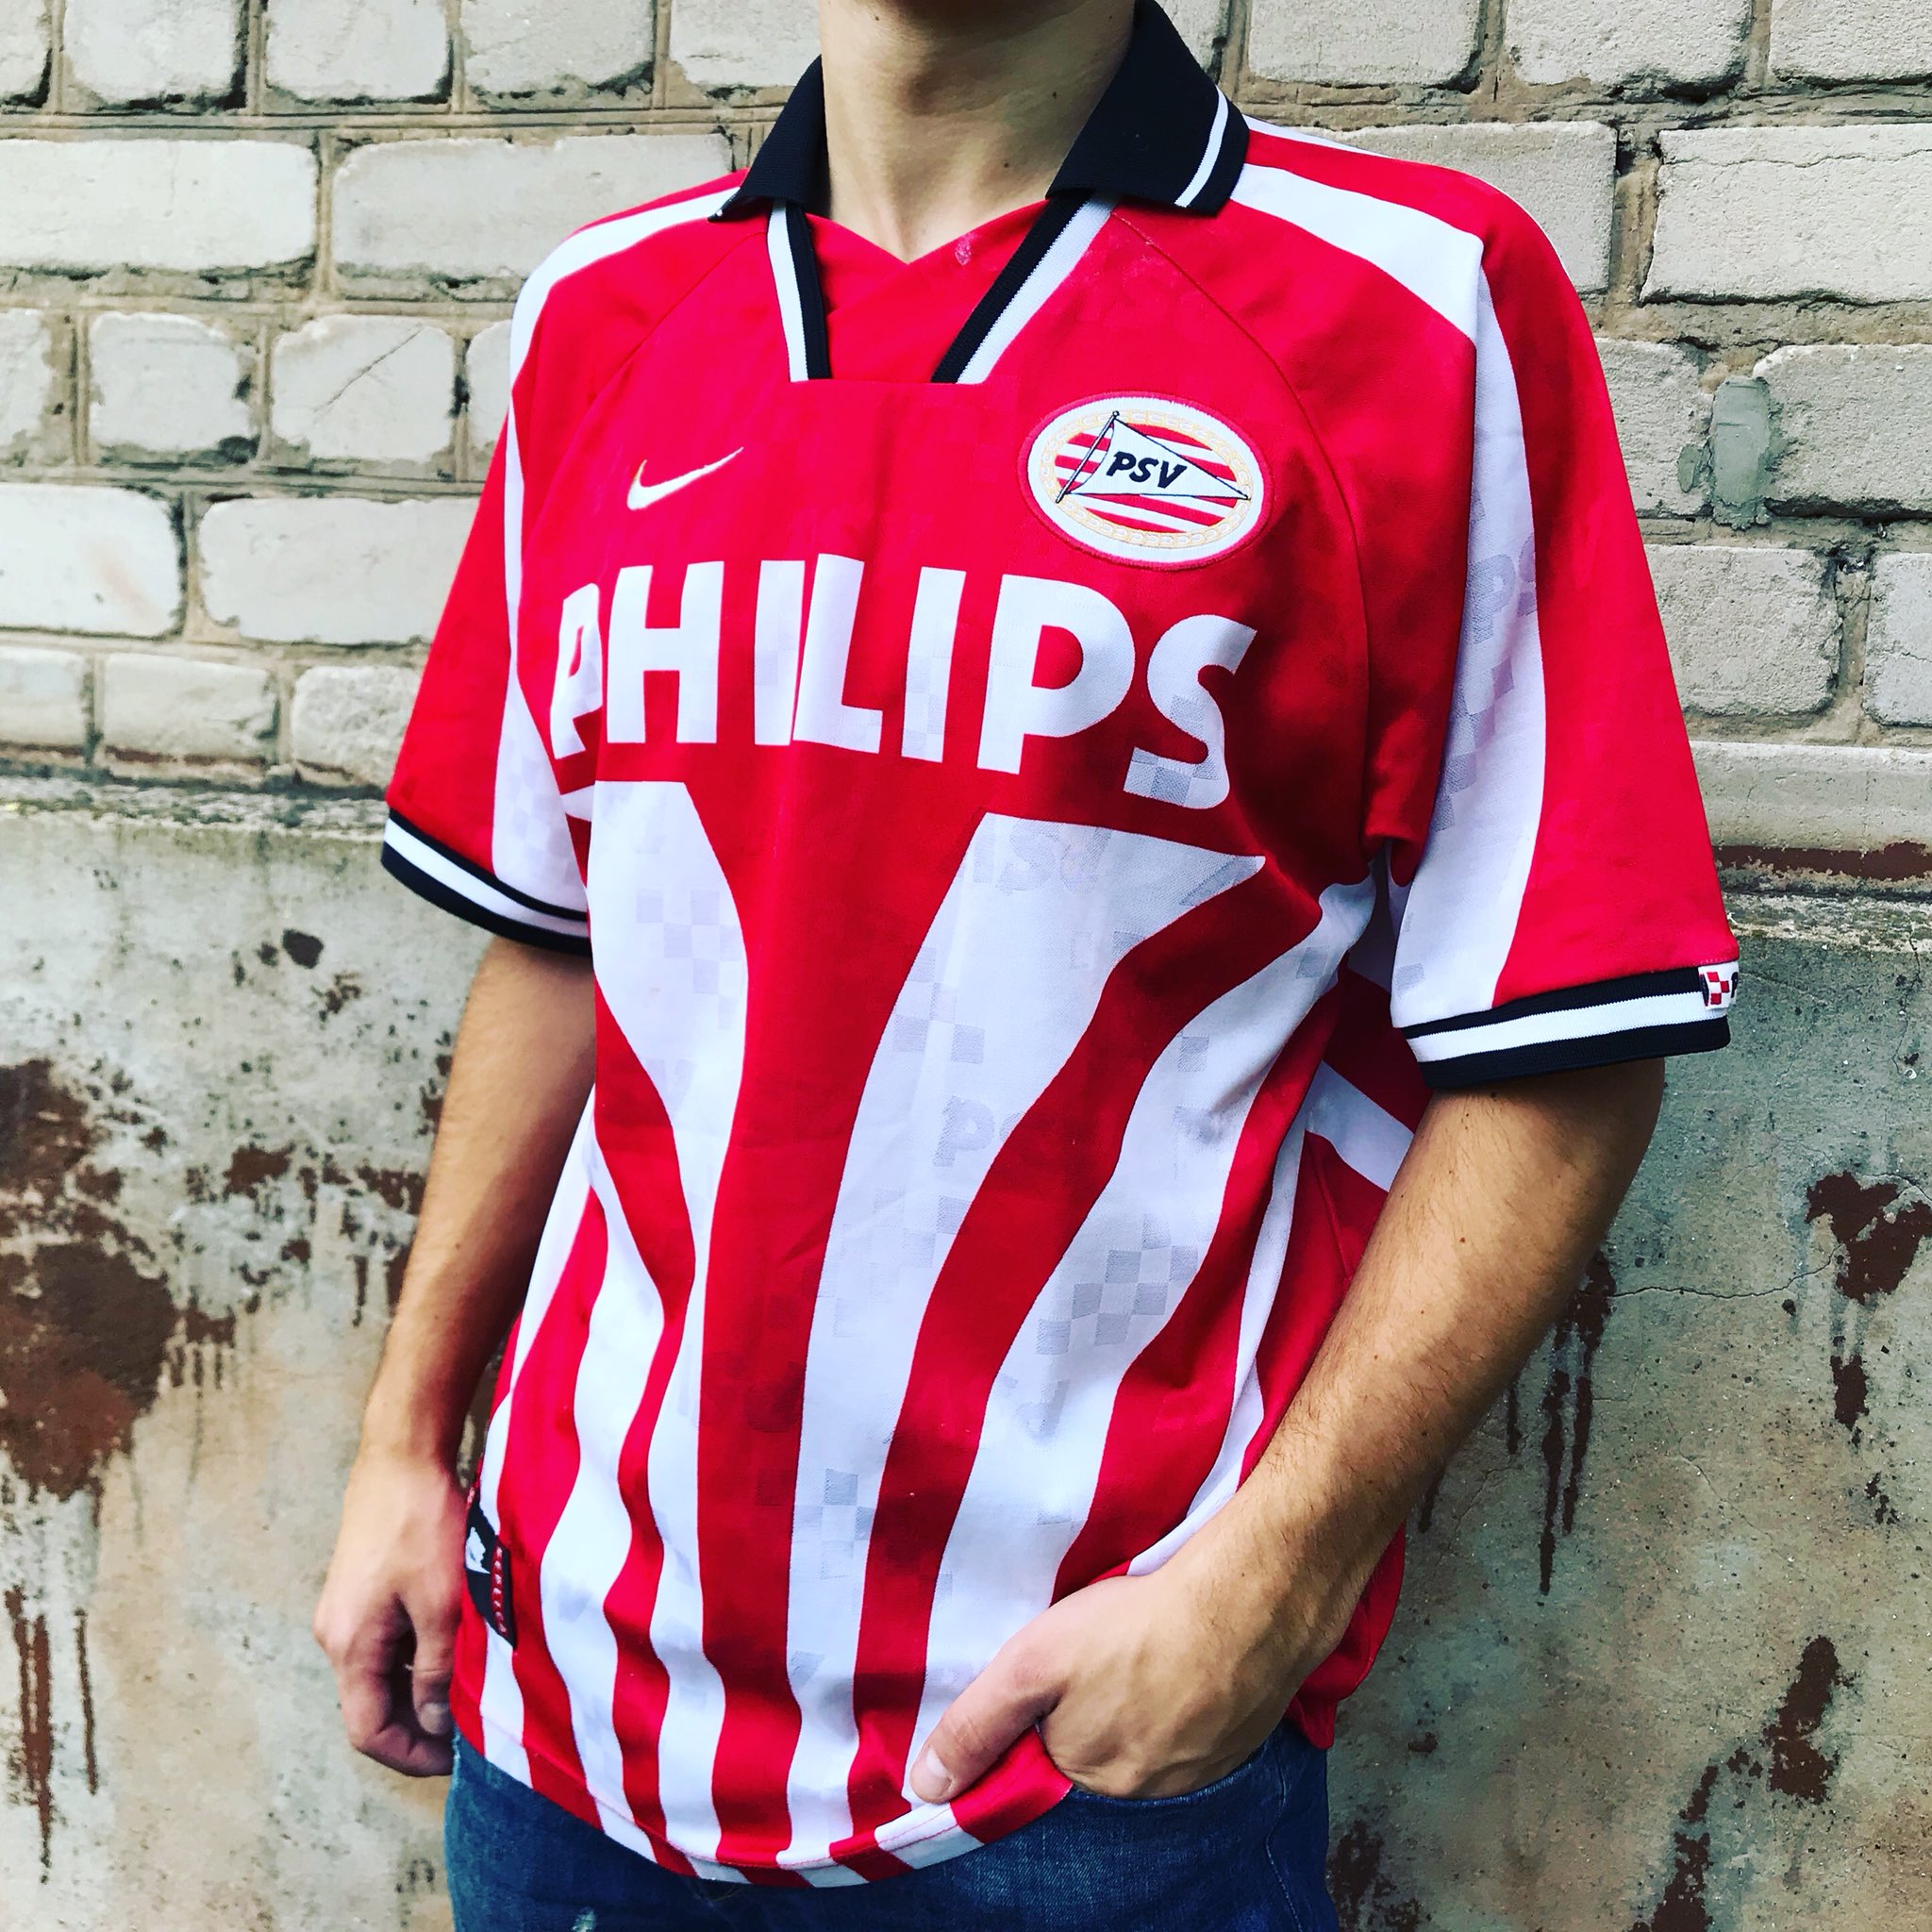 ClassicFootballShirt Twitter: "1996-97 PSV Eindhoven Home shirt made by Nike #psv #psveindhoven #nike #footballshirt #footballshirts #retrofootball #classicfootball_shirt https://t.co/Nme0V8DmRk" Twitter